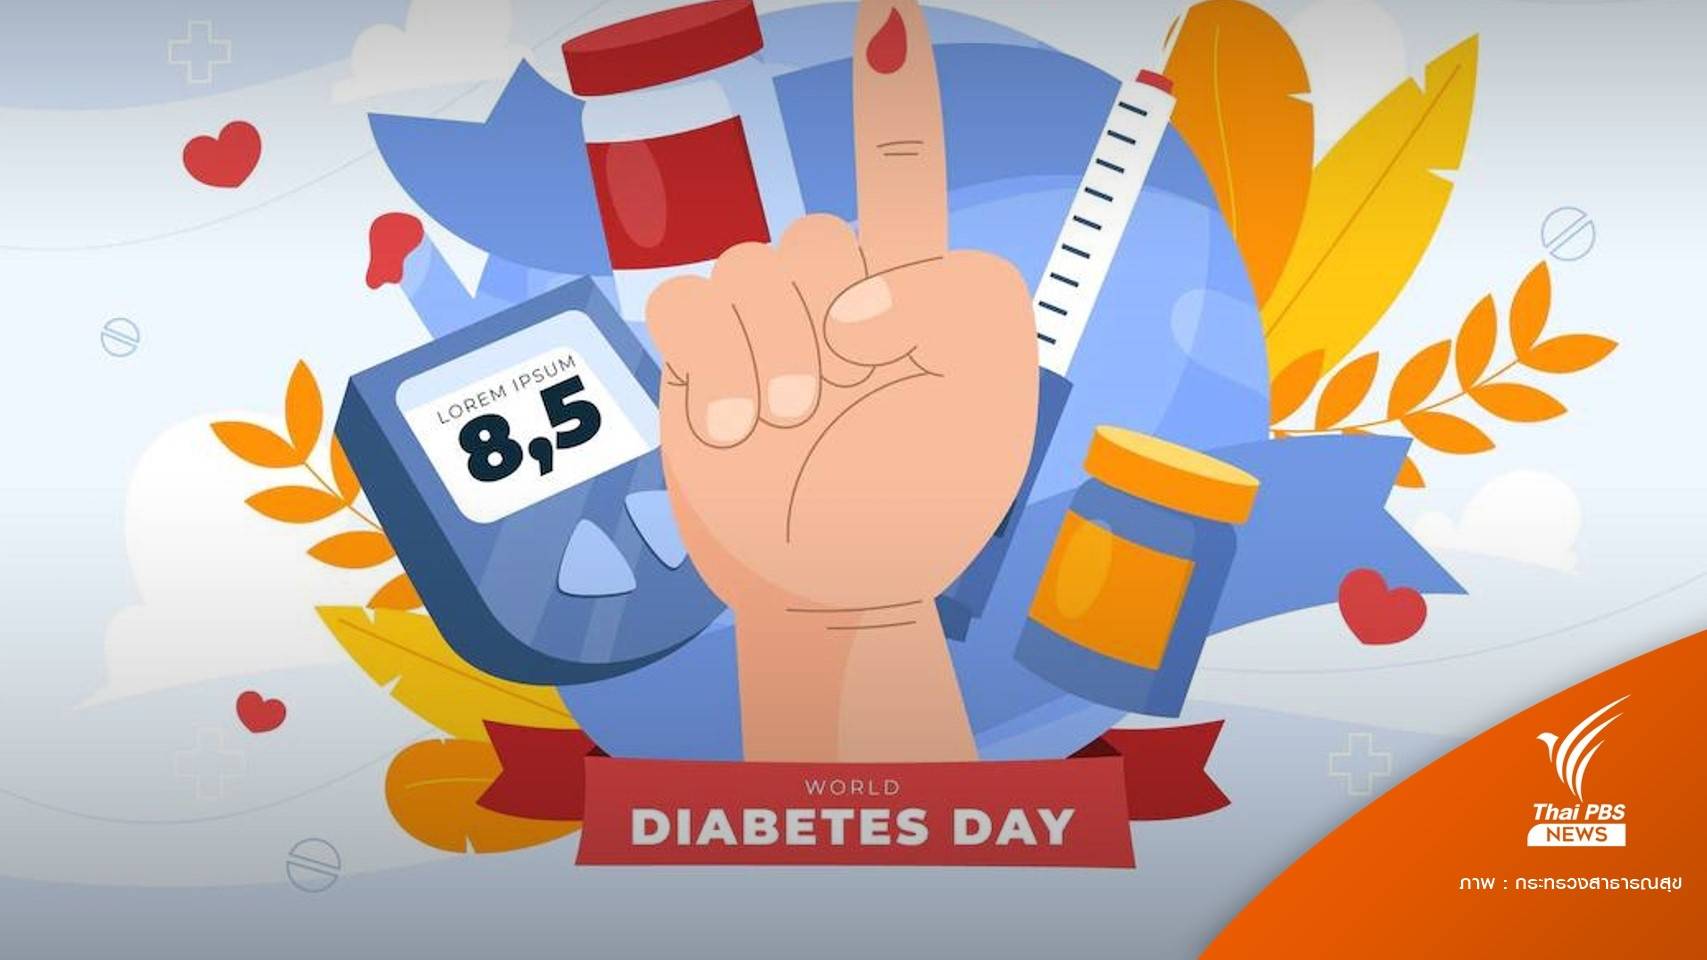 ทั่วโลกป่วย "เบาหวาน" 537 ล้านคน เฉลี่ยตาย 1 คนทุก 5 วินาที